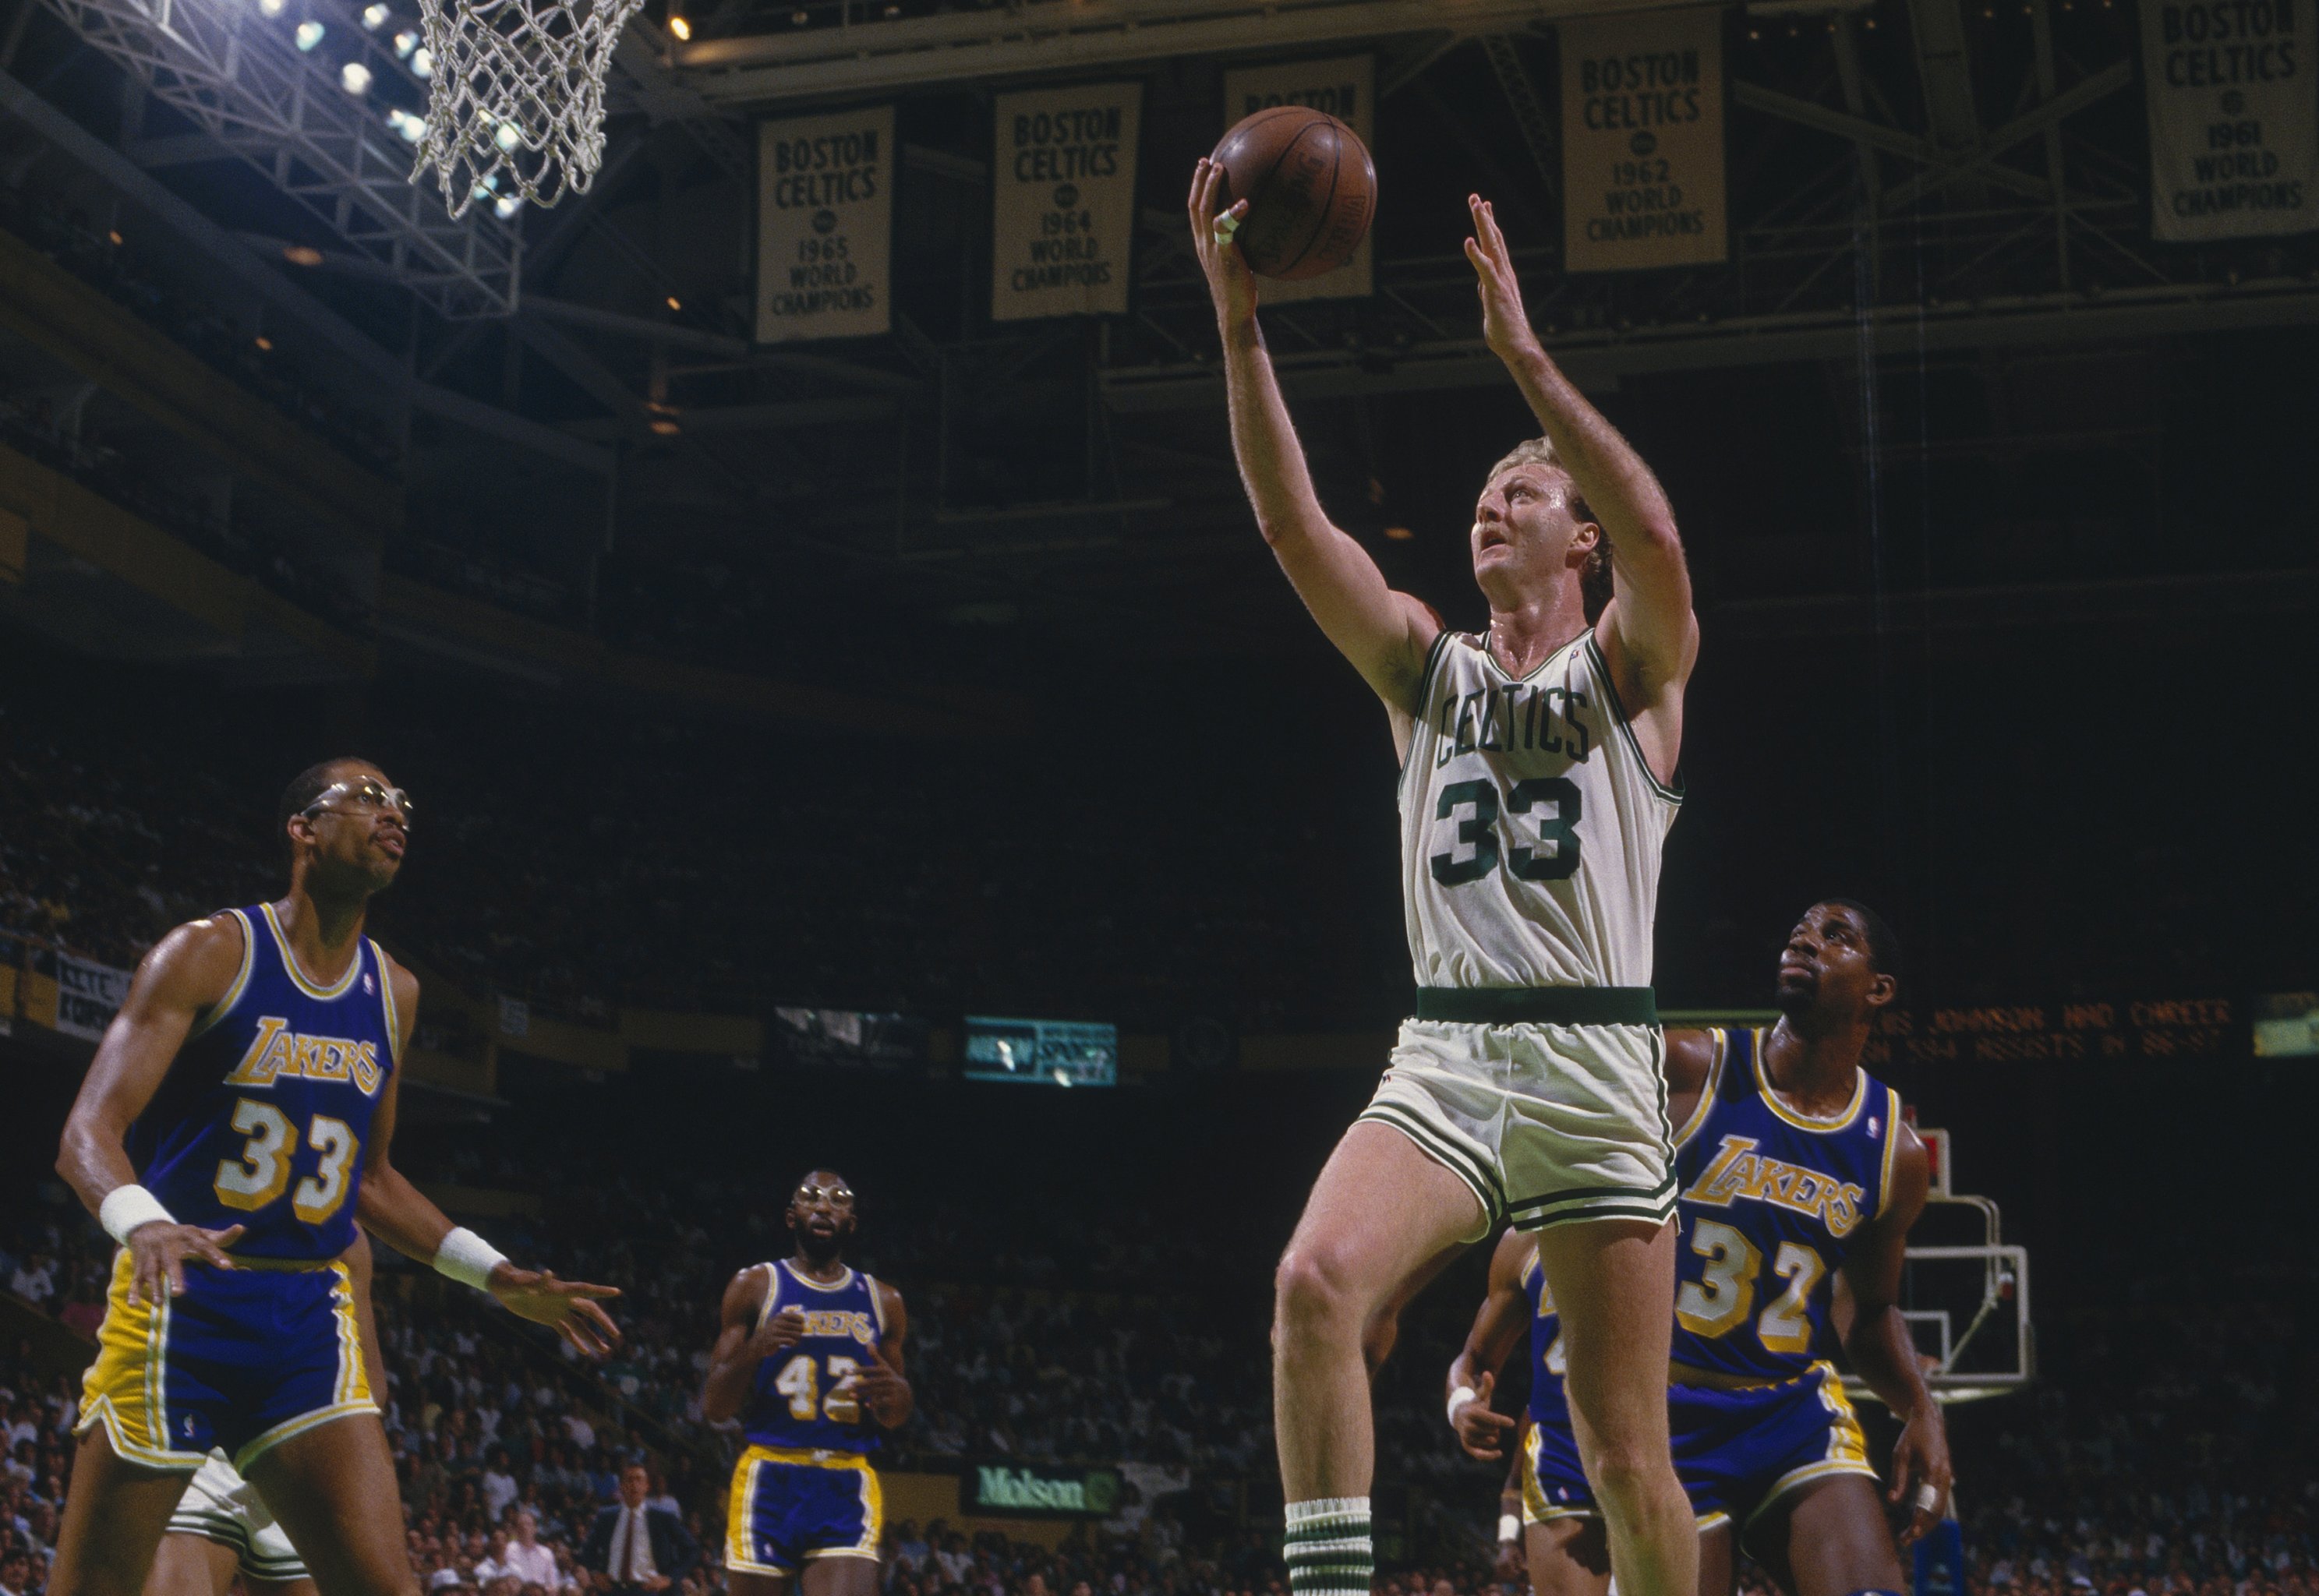 Boston Celtics vs Los Angeles Lakers: The NBA's richest rivalry